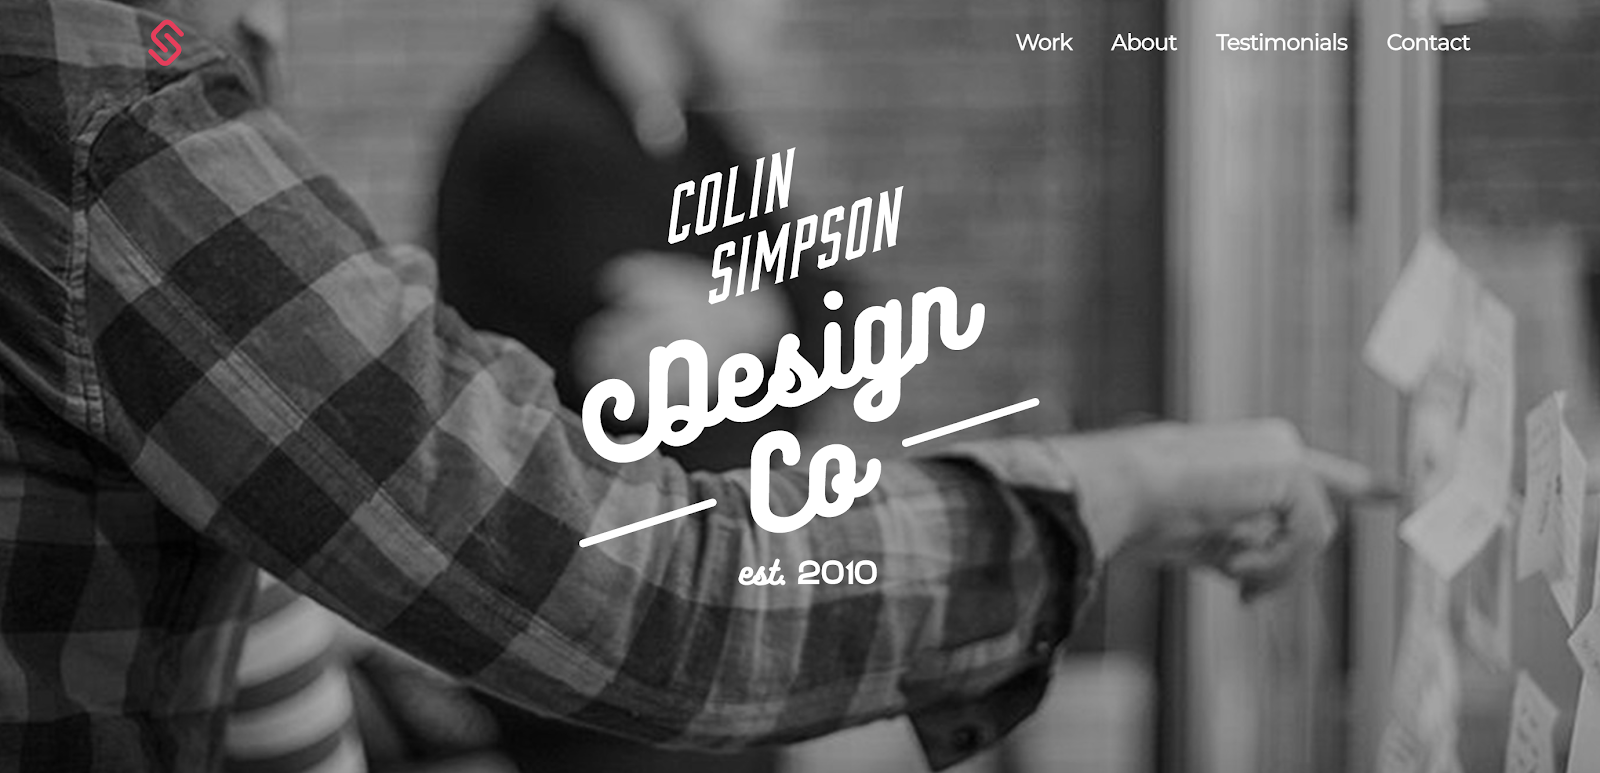 Portafolio de desarrollador web de Colin Simpson